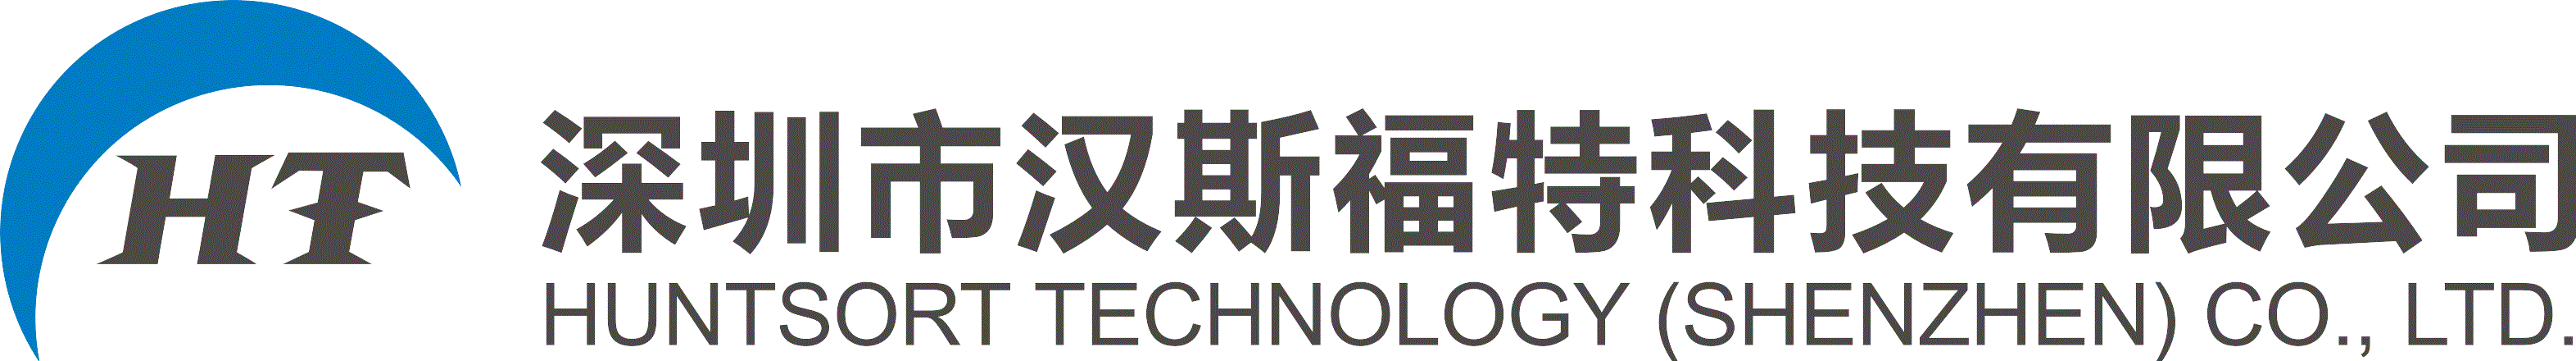 深圳市汉斯福特科技有限公司